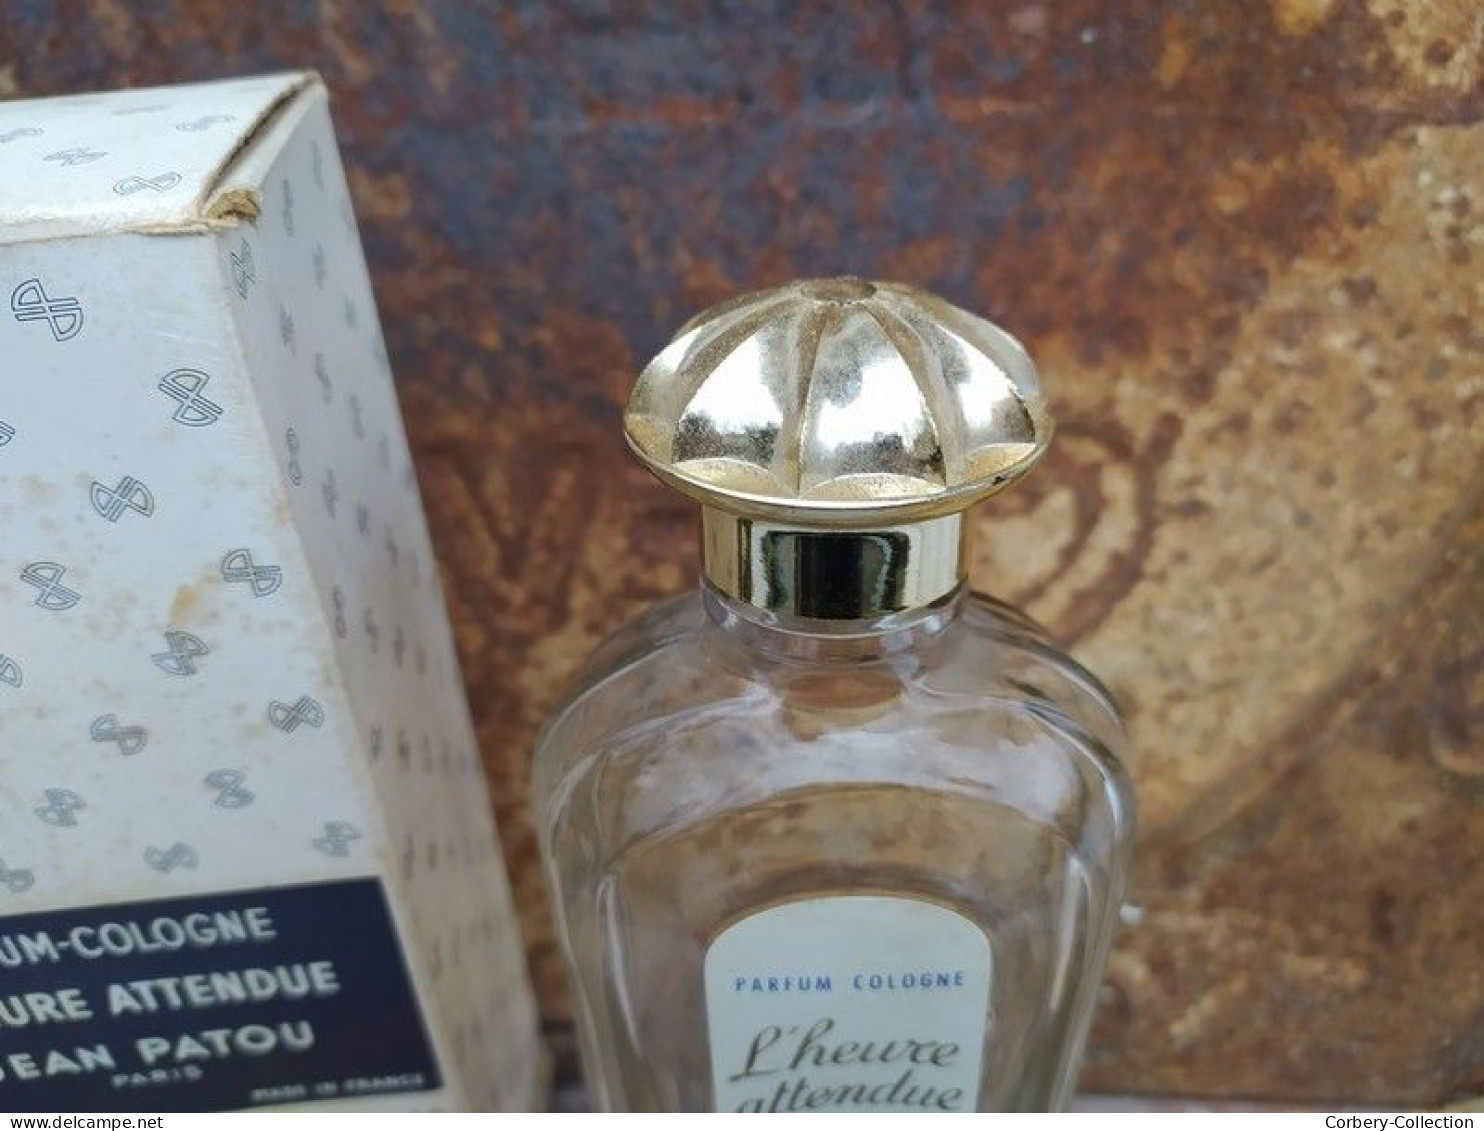 Ancien Flacon Parfum Jean Patou Paris L'Heure Attendue - Flakons (leer)